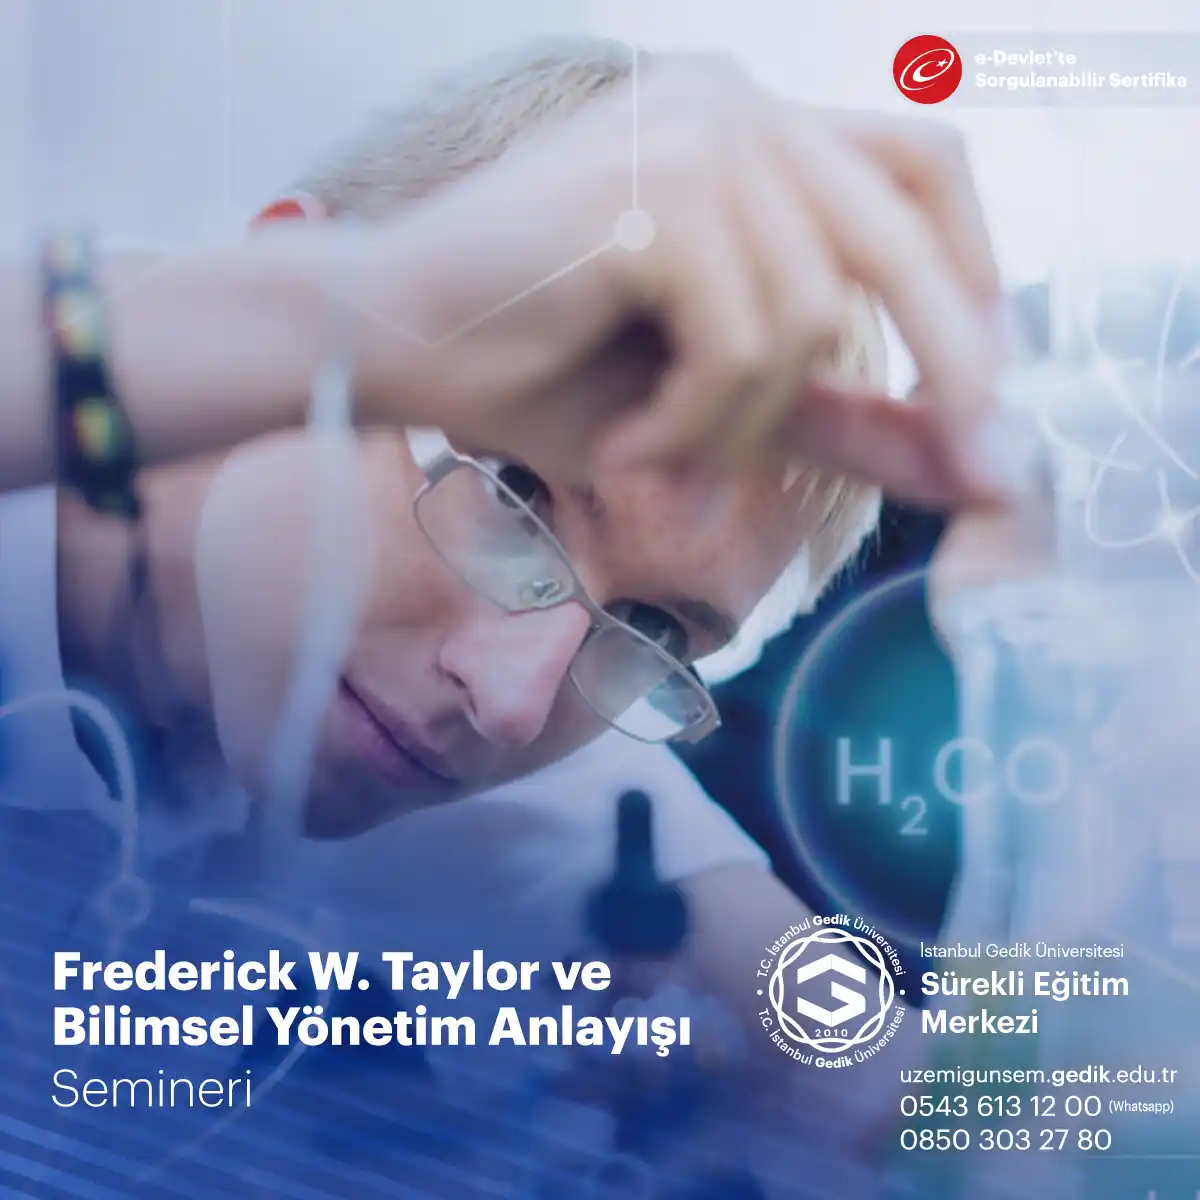 Frederick W. Taylor ve Bilimsel Yönetim Anlayışı Semineri